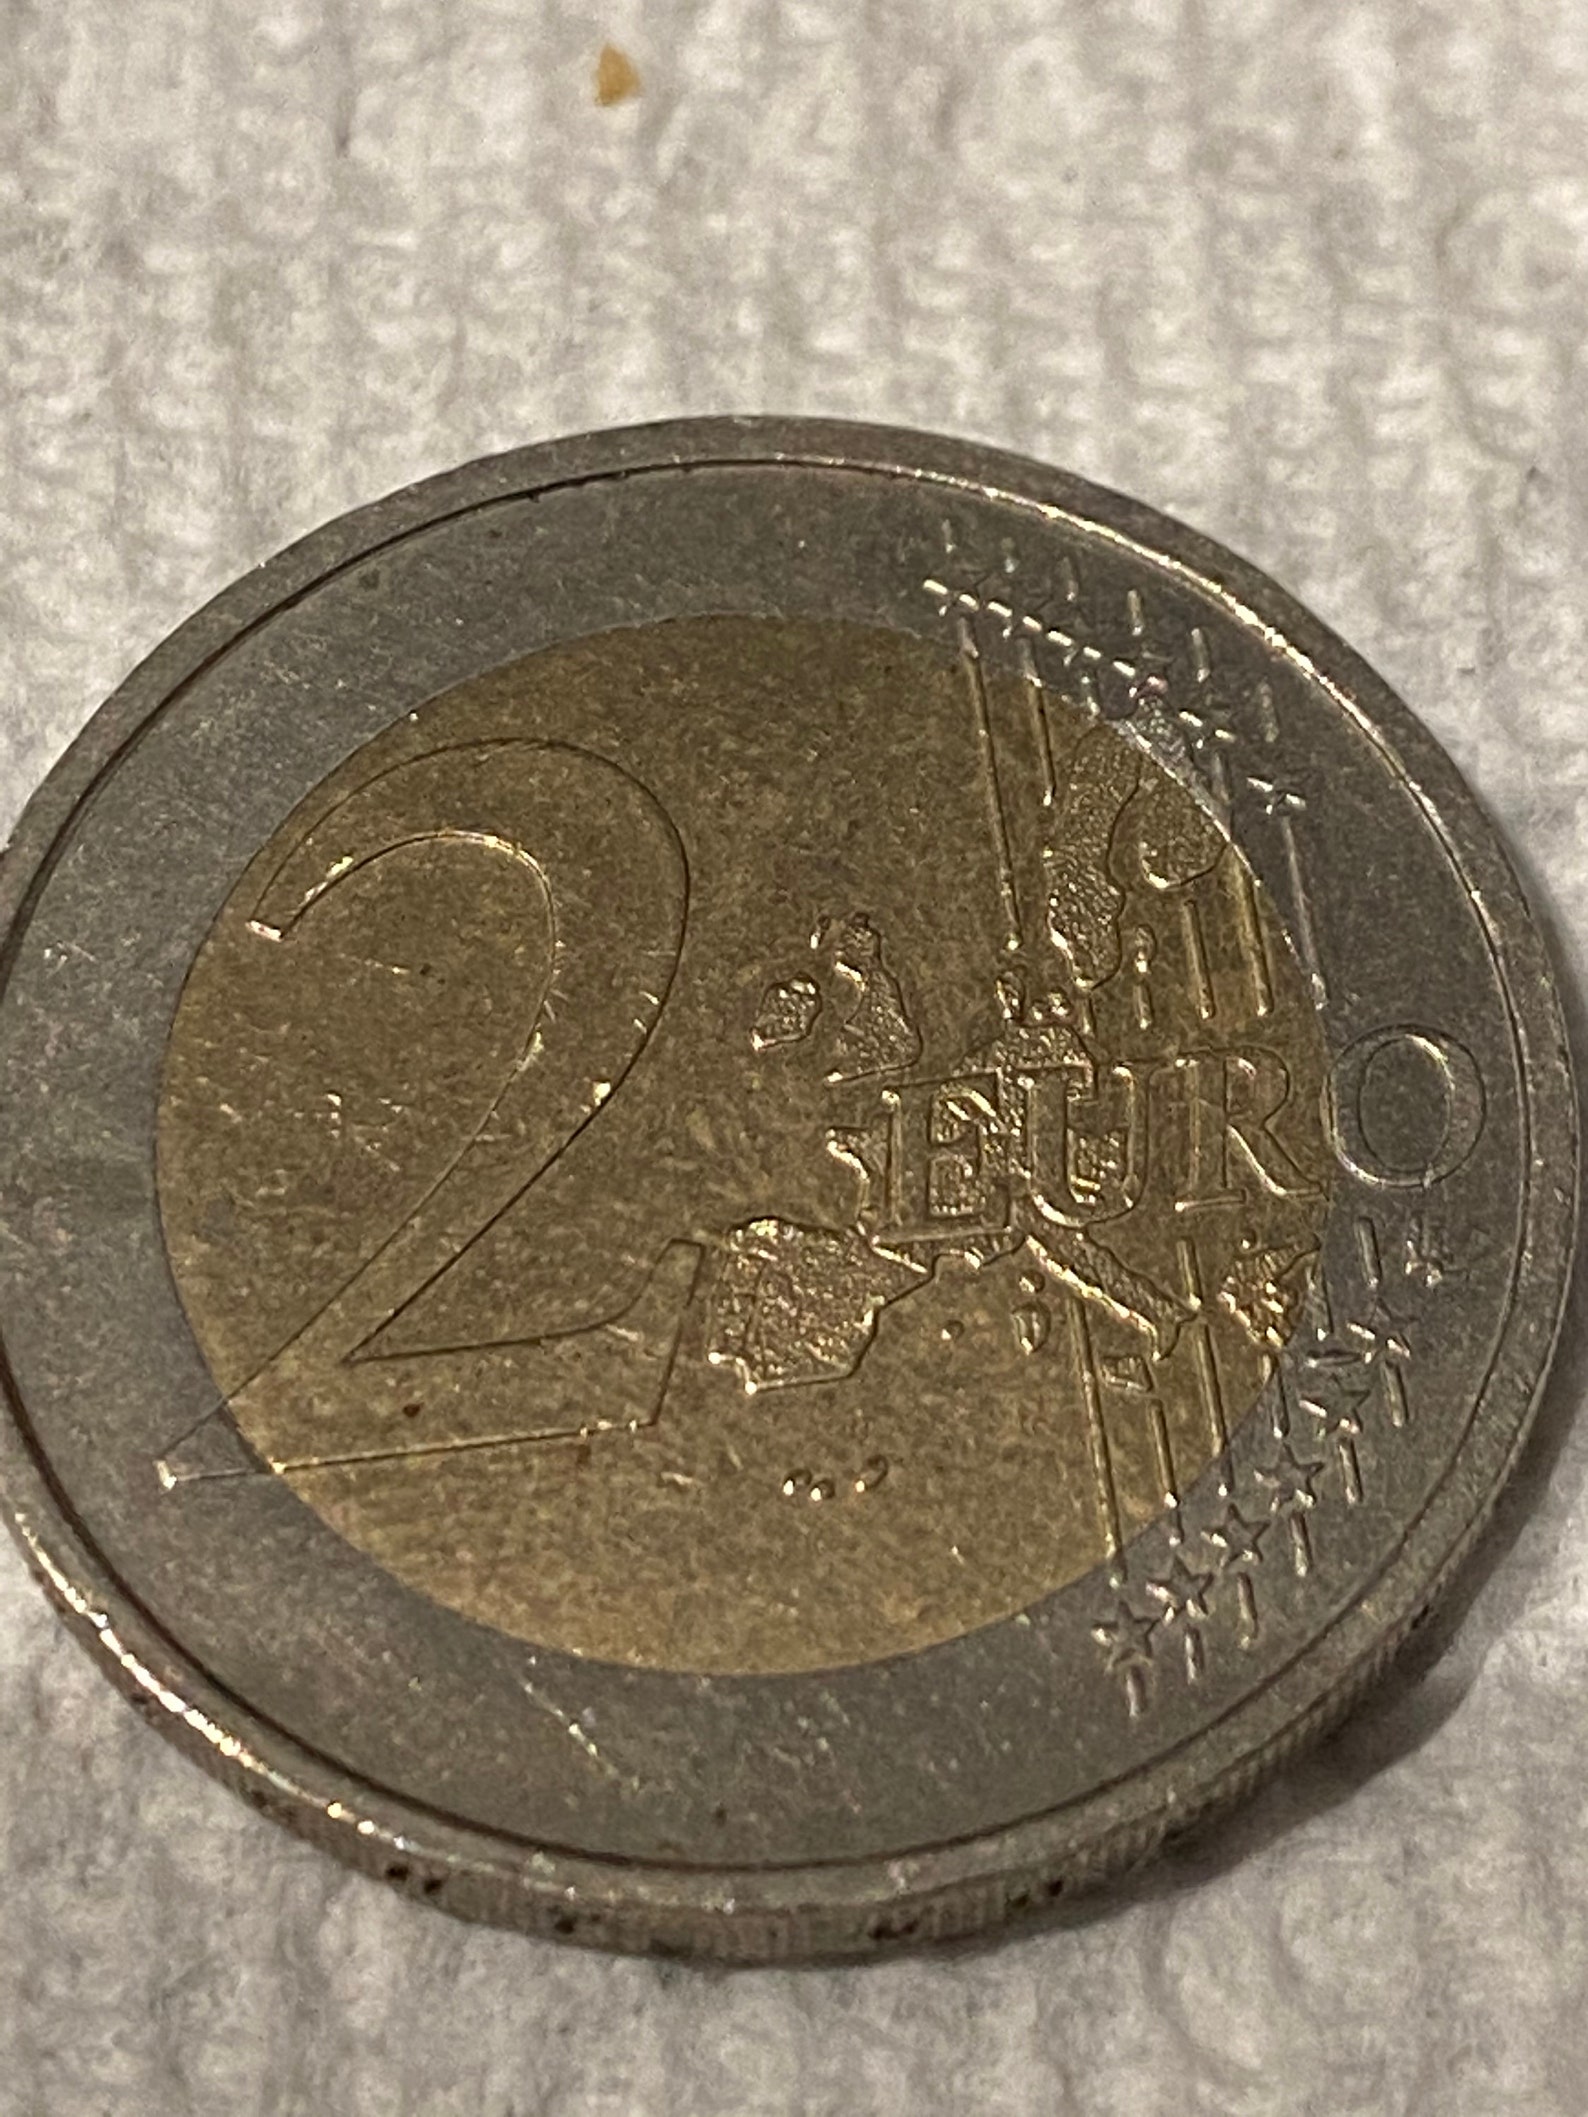 Rare 2002 G German 2 Euro Collectible Coin Etsy